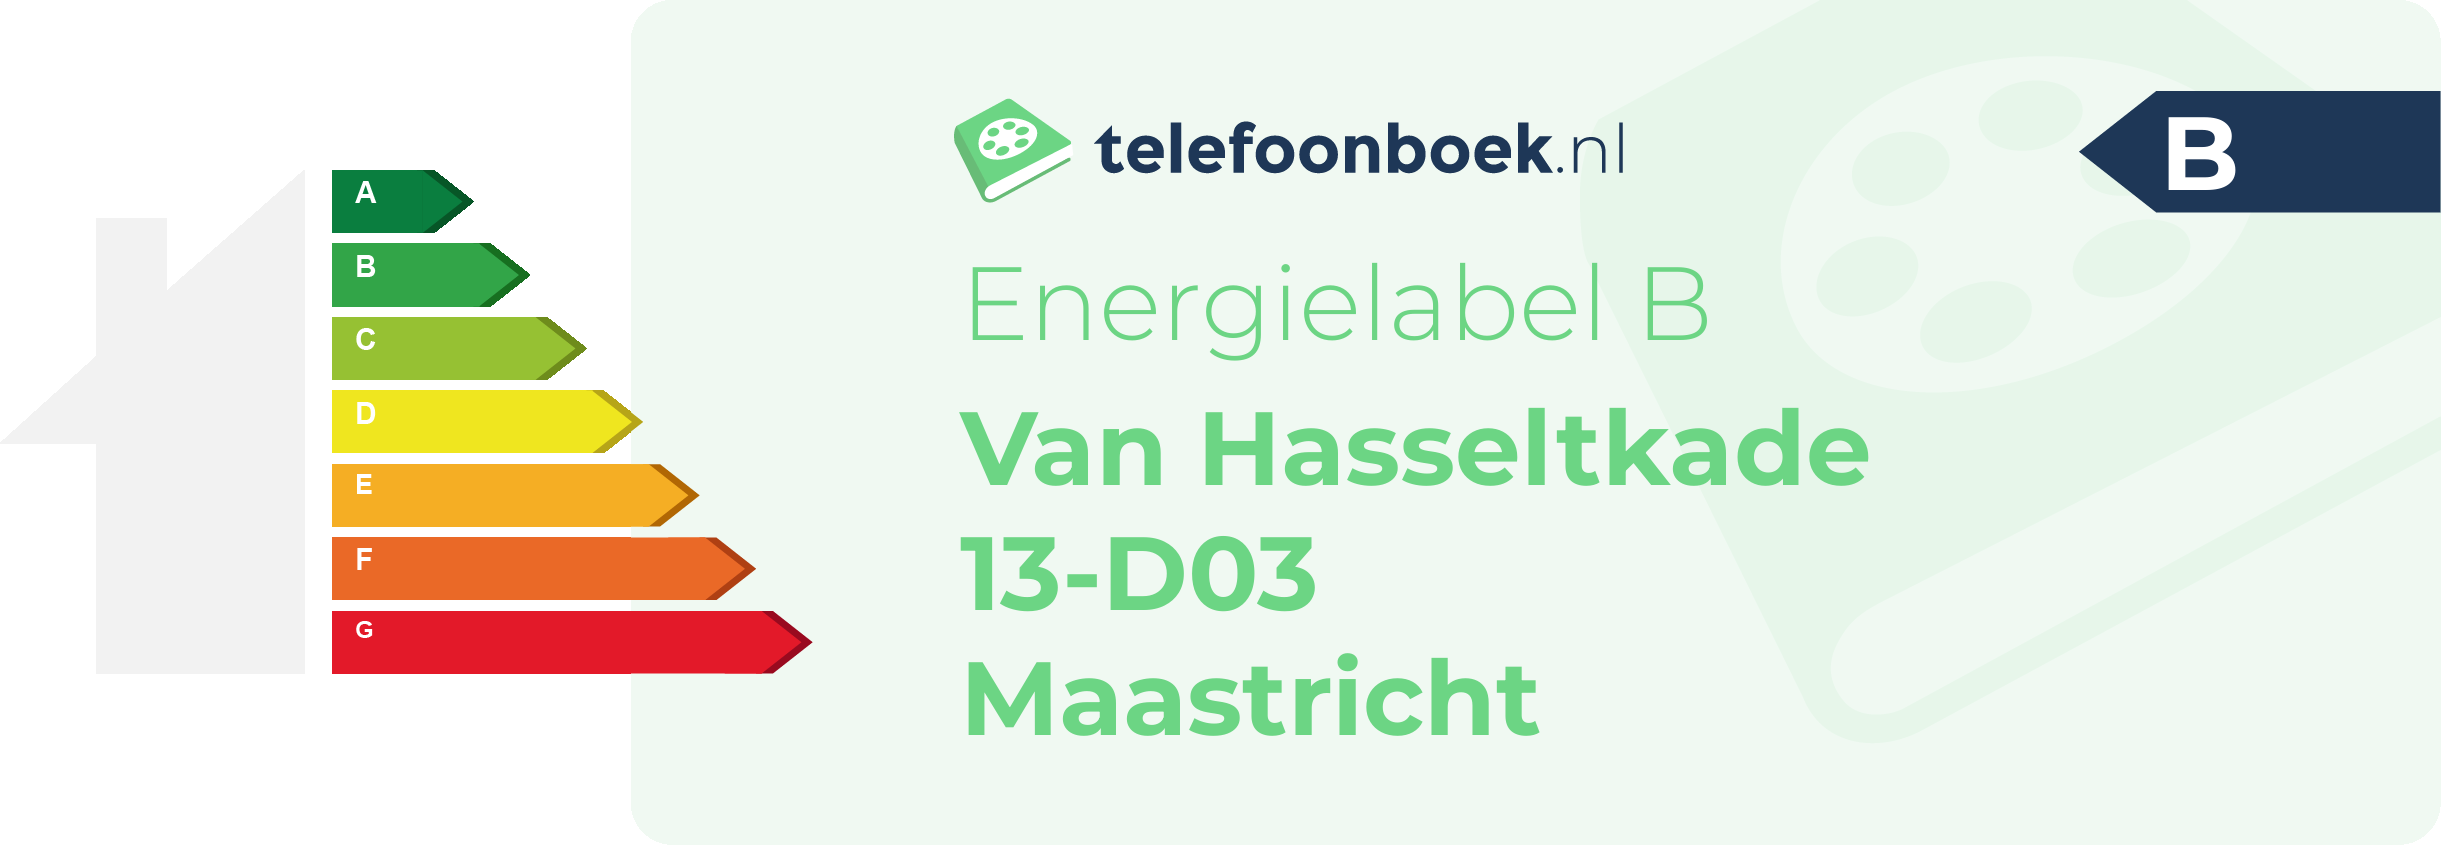 Energielabel Van Hasseltkade 13-D03 Maastricht